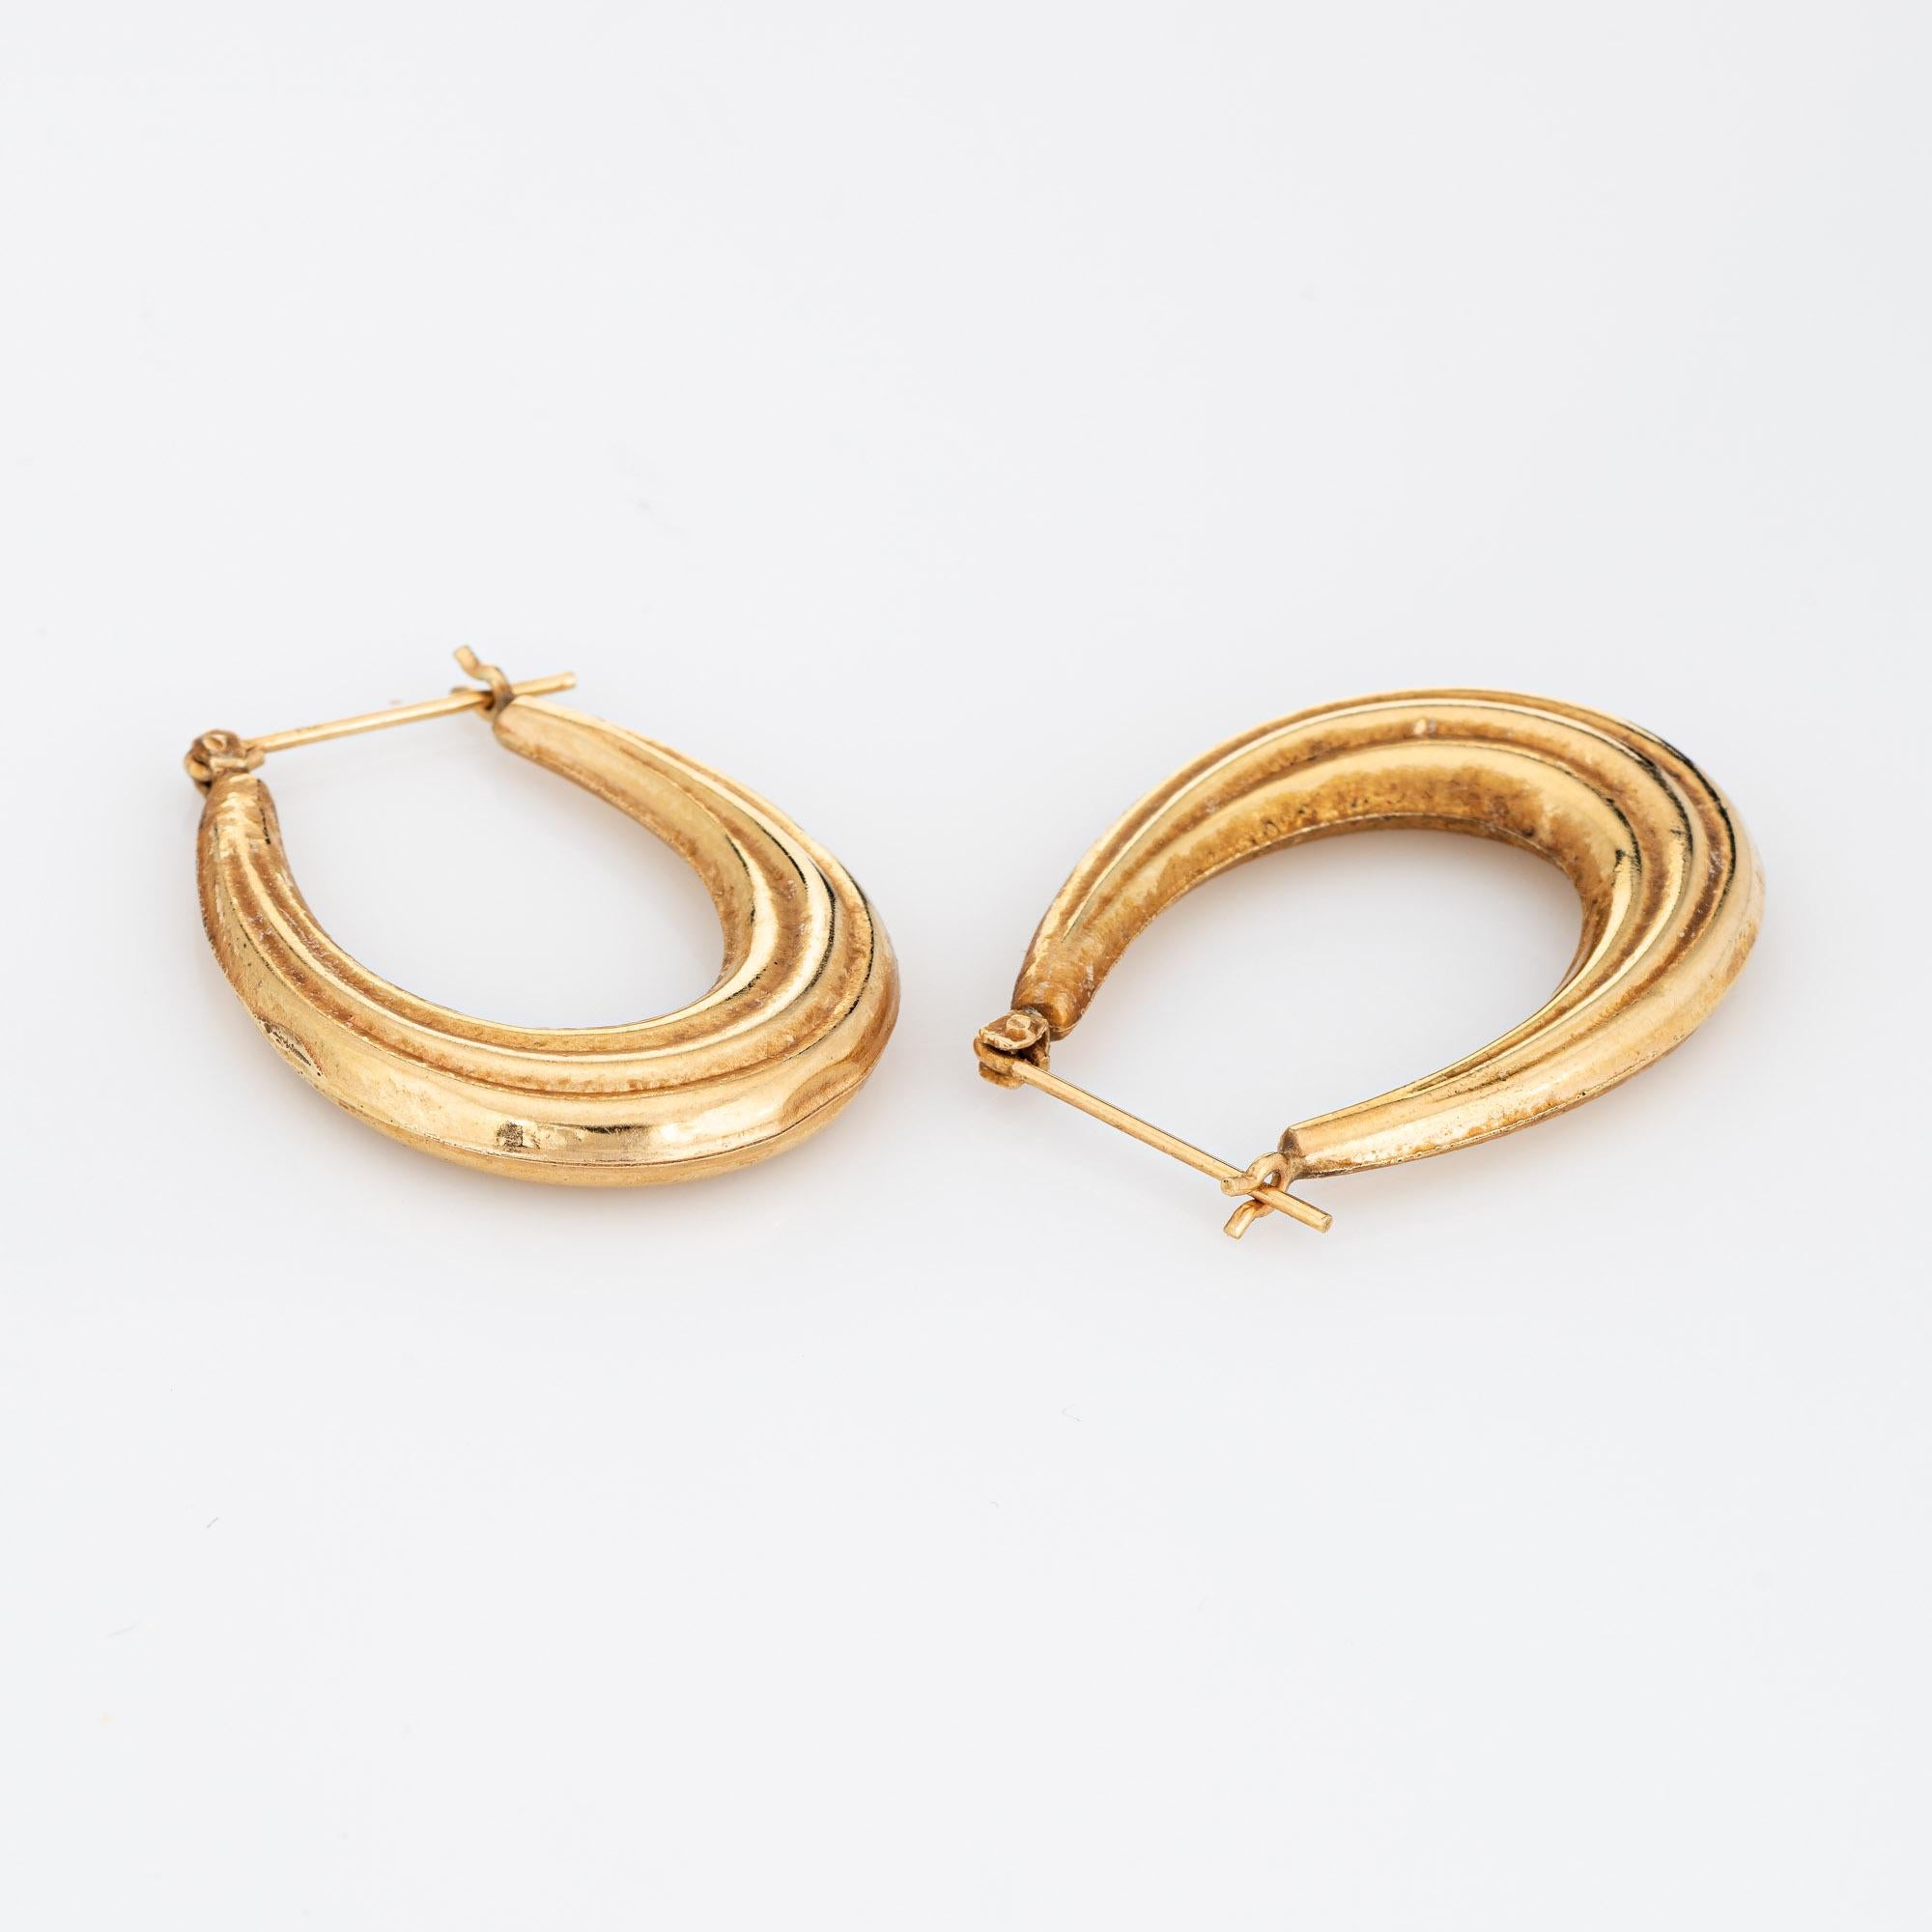 Feines, detailreiches Paar ovaler Ohrringe aus 14-karätigem Gelbgold (circa 1980er Jahre). 

Die stilvollen Ohrringe haben ein geriffeltes Design. Die hohlen Ohrringe sind leicht und sitzen bequem am Ohrläppchen. Die Ohrringe sind mit einem